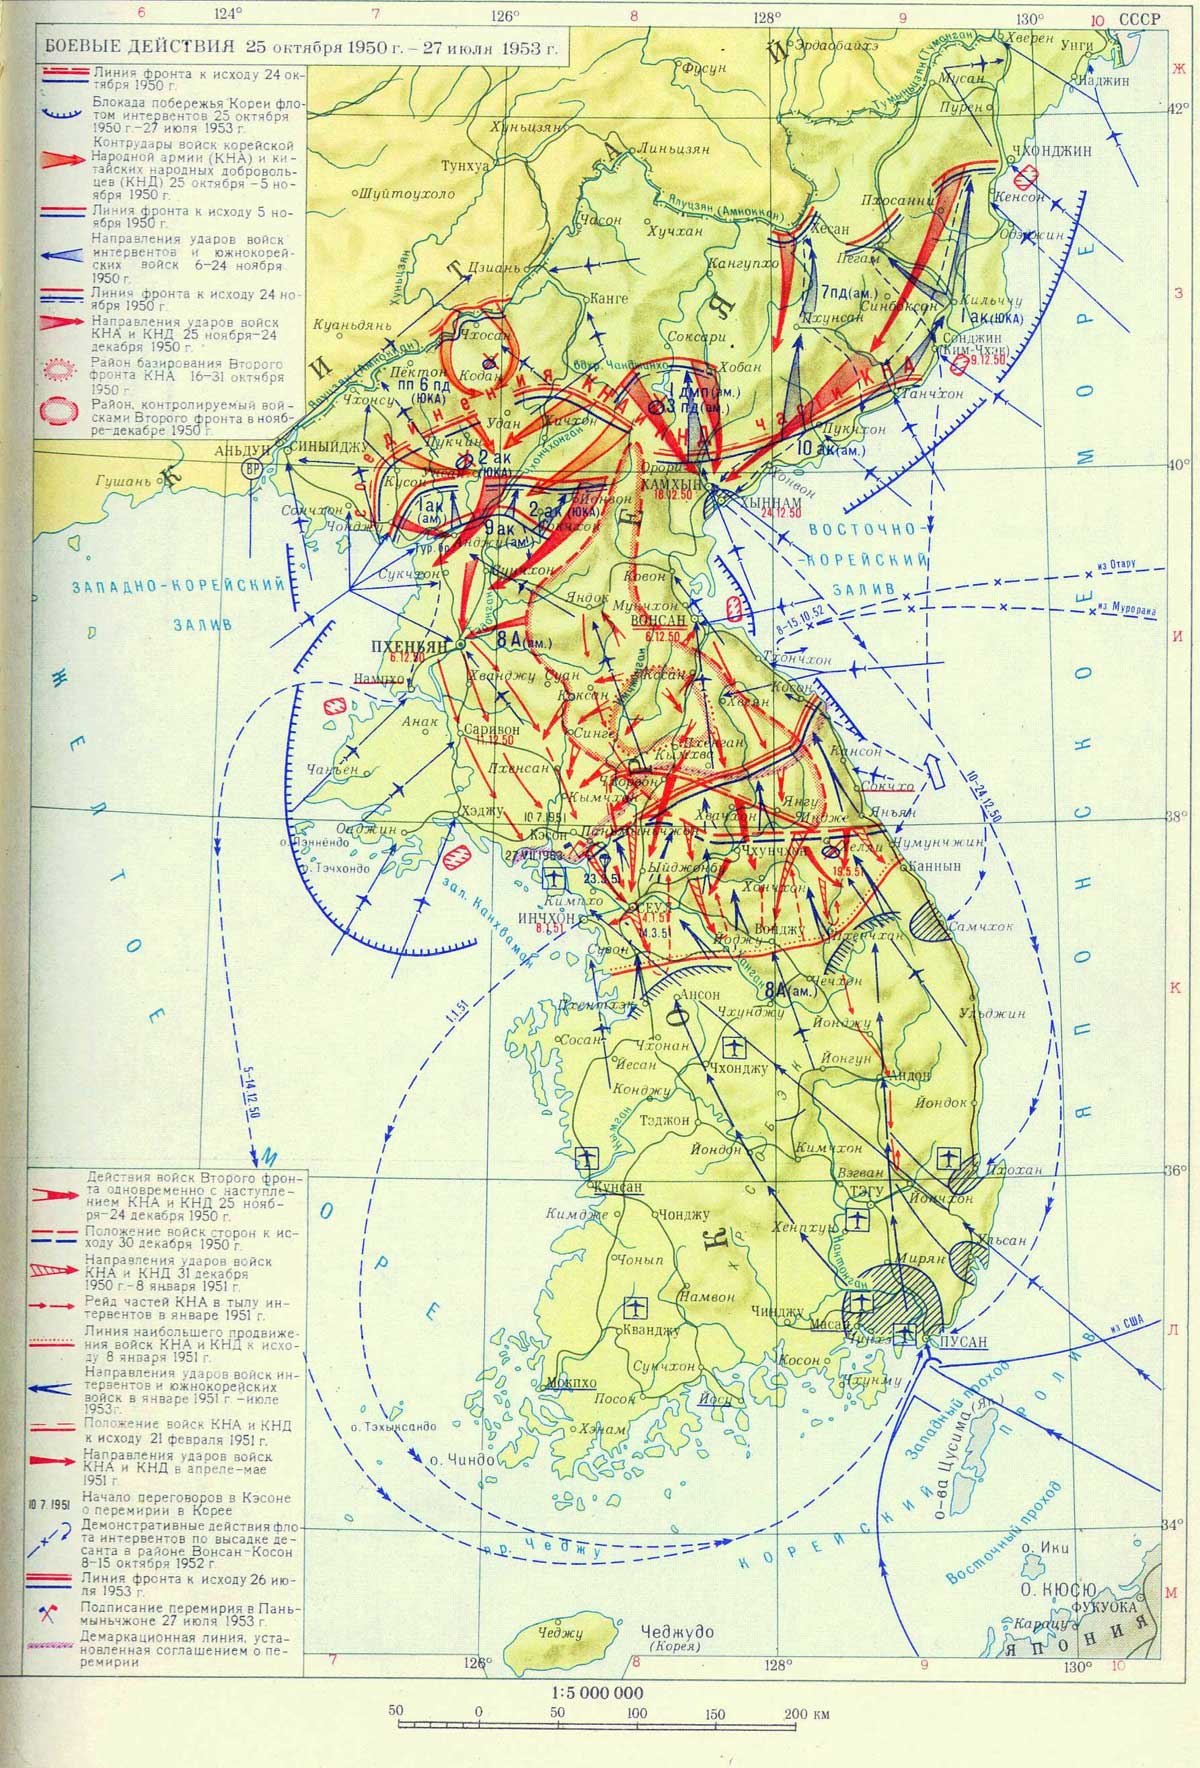 Боевые действия 25 октября 1950 — 24 июля 1953 года